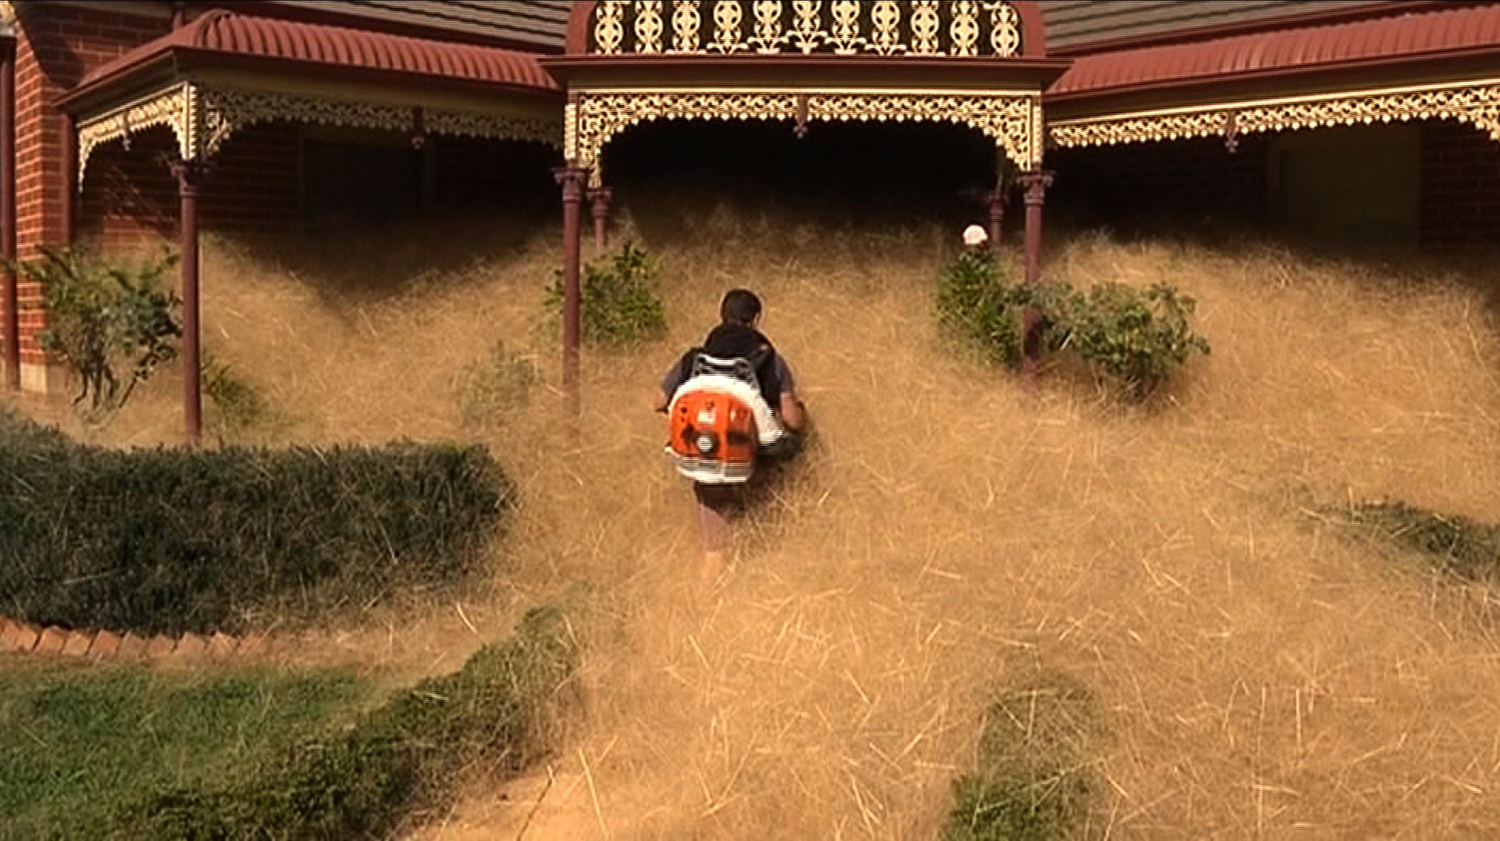 Plantas rodadoras invaden un pueblo australiano